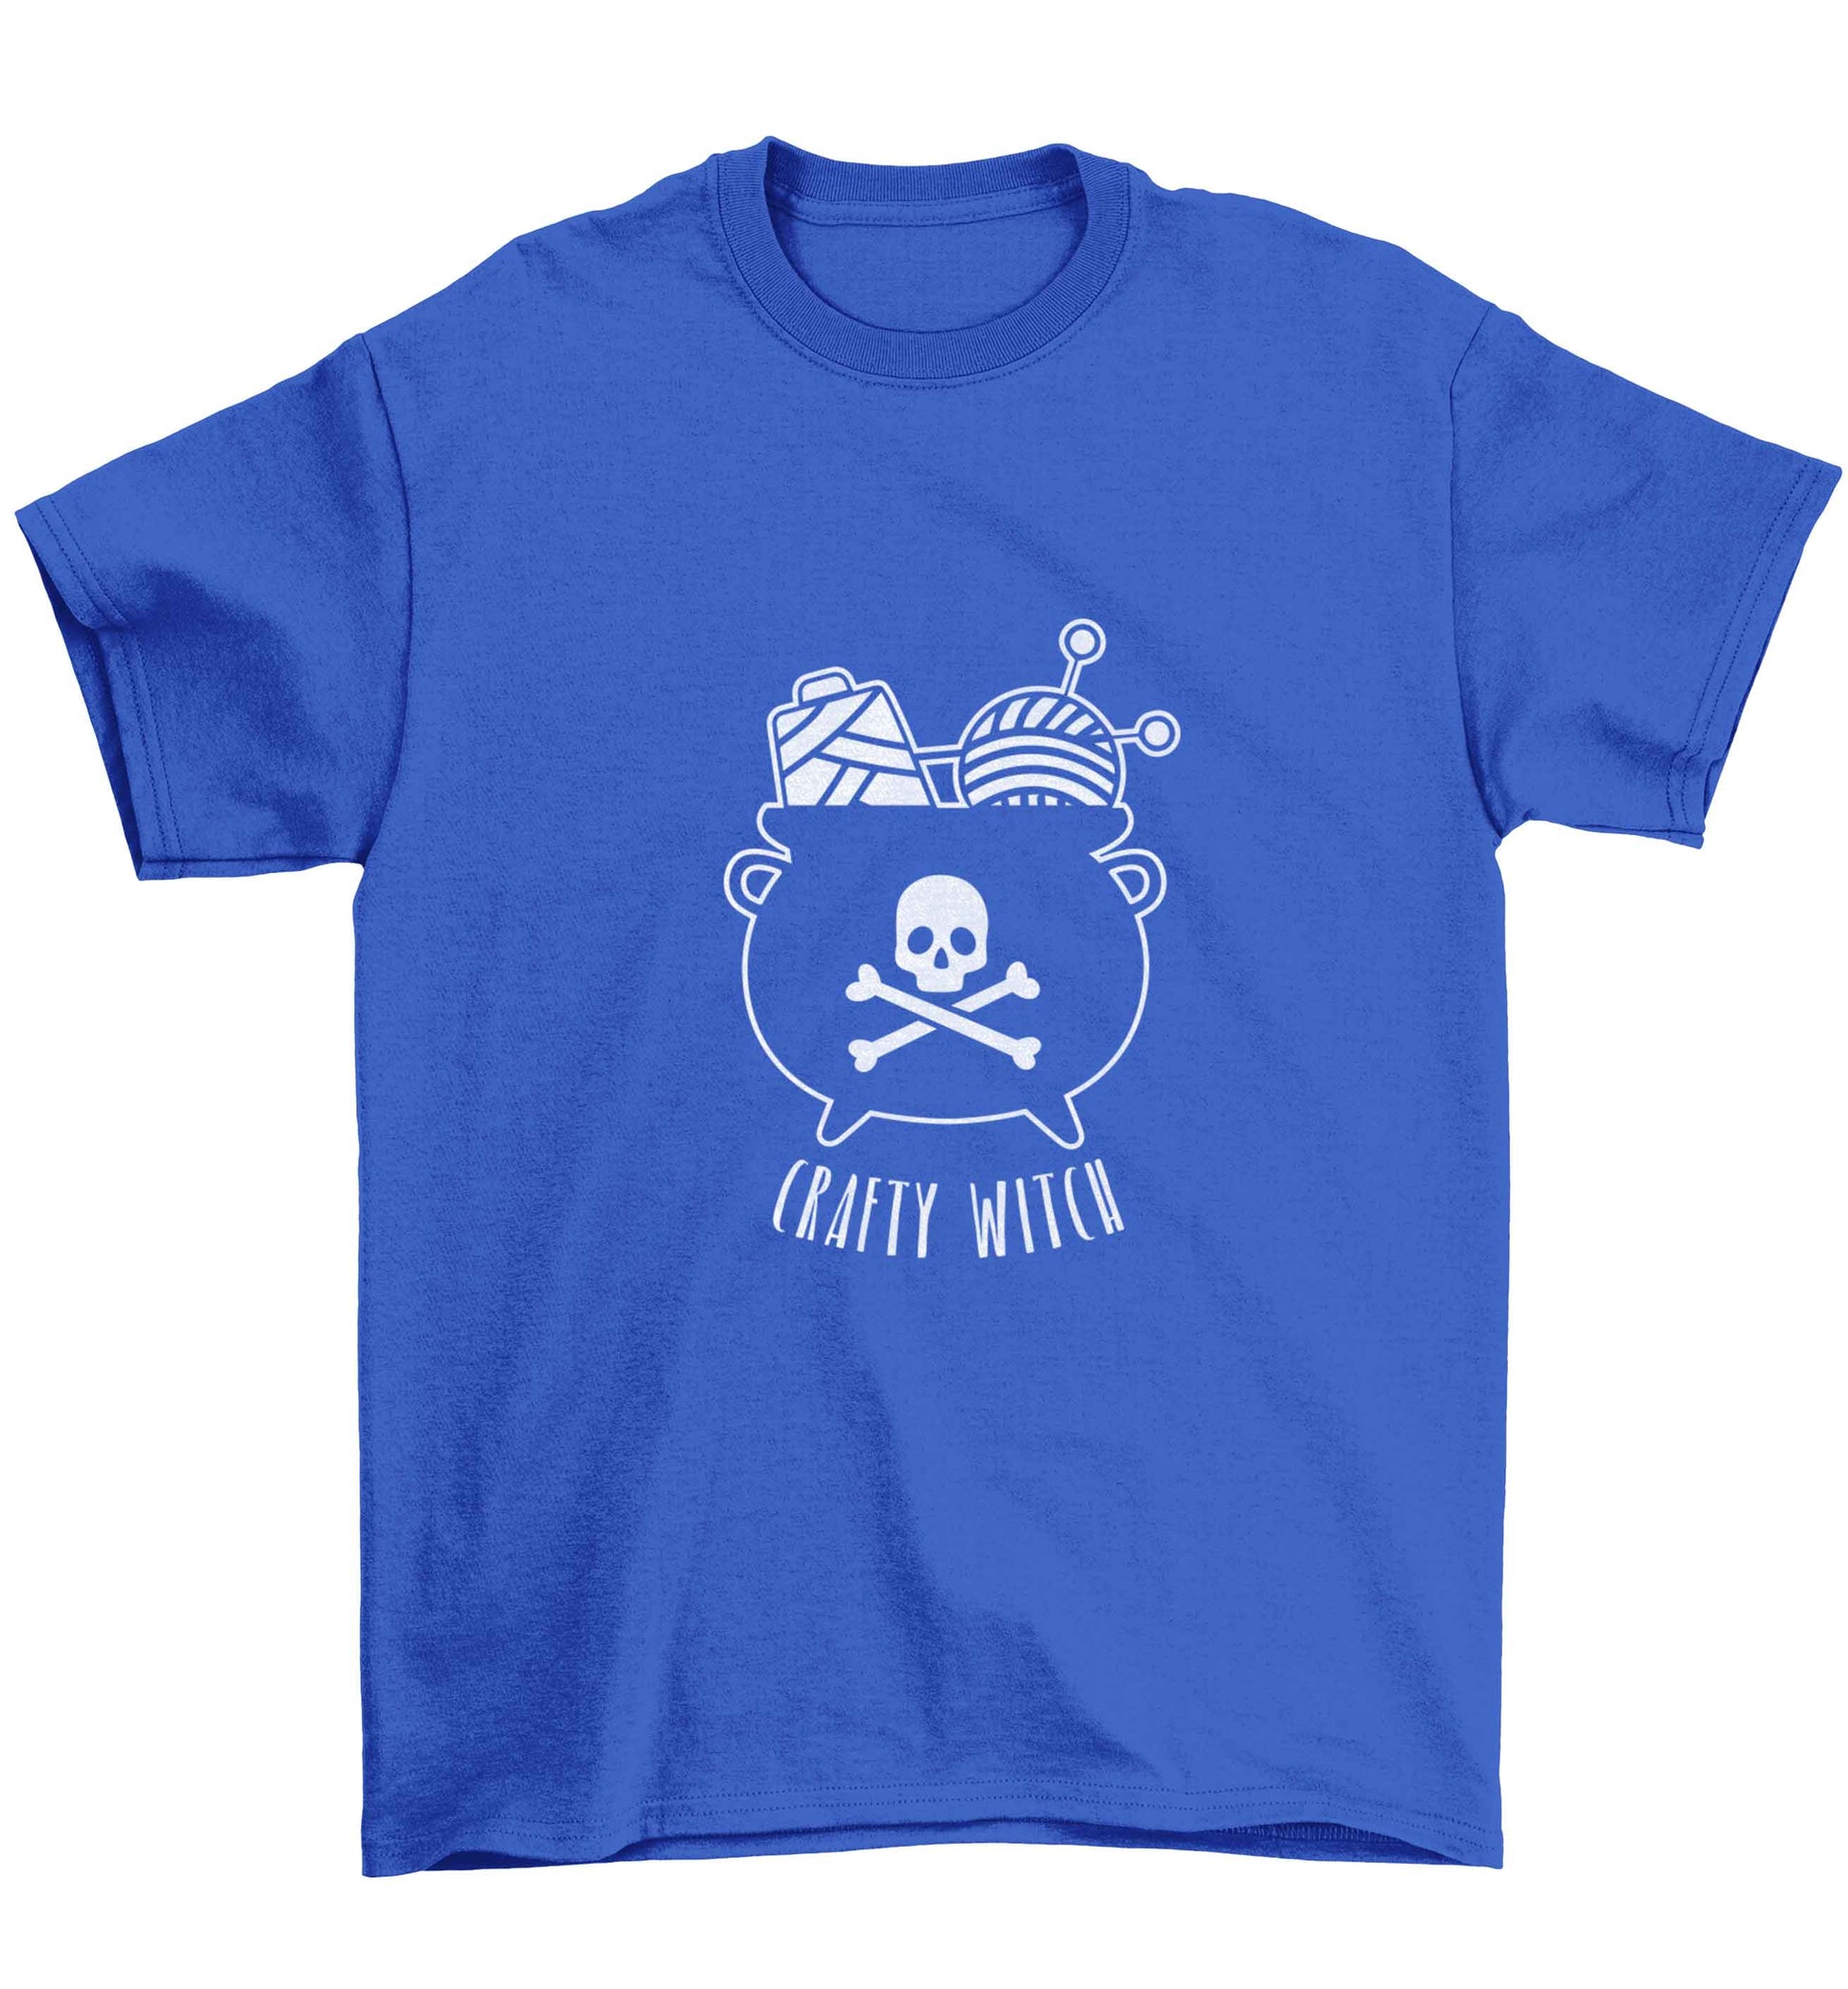 Crafty witch Children's blue Tshirt 12-13 Years